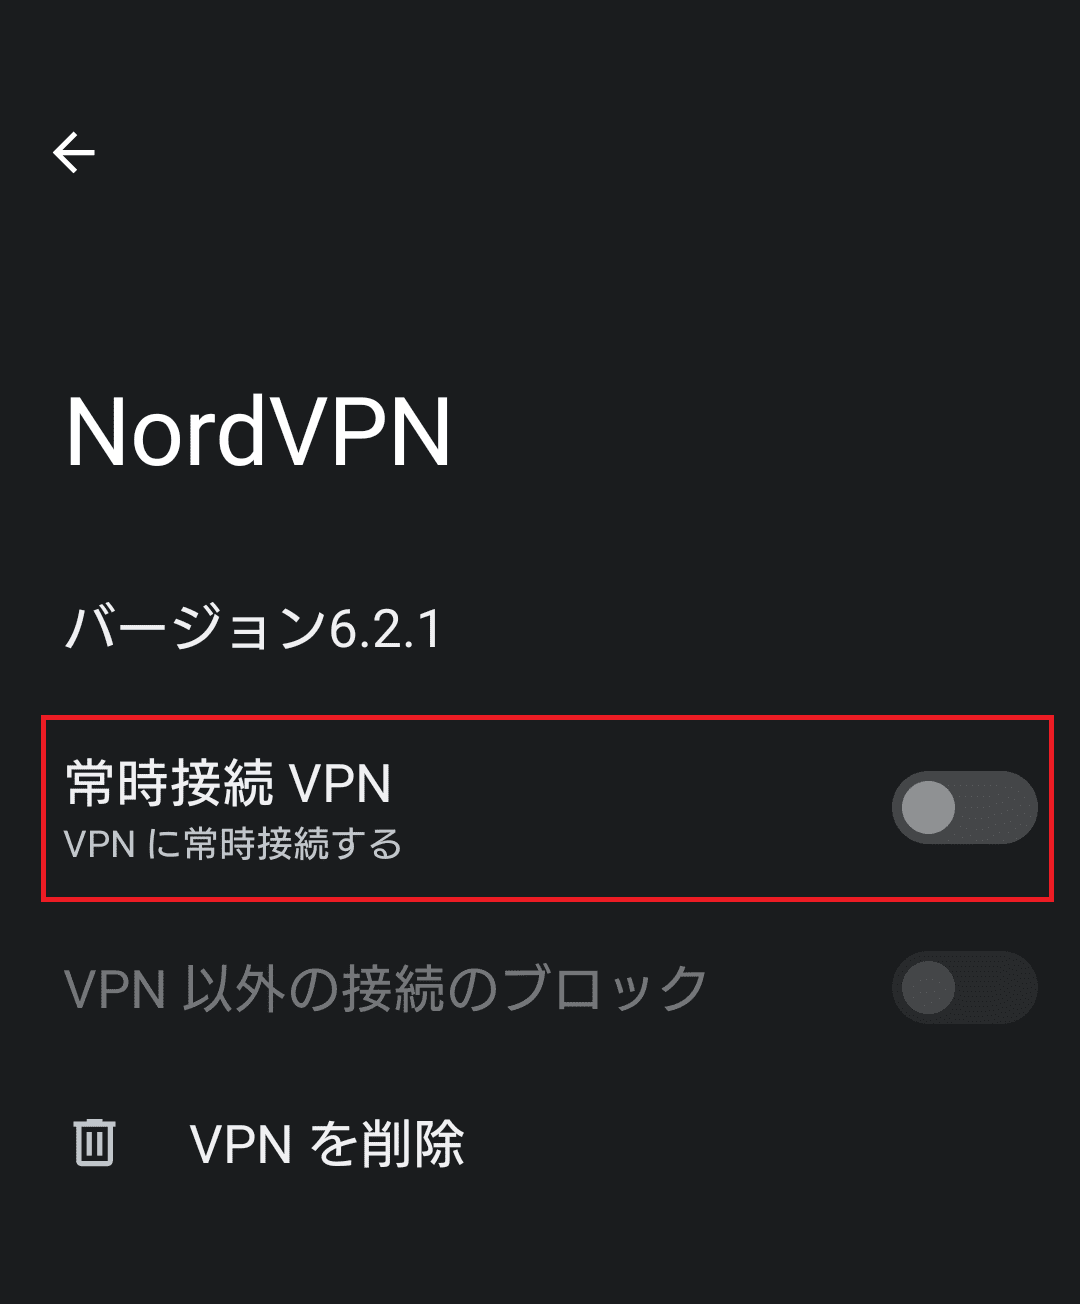 Androidスマホは、VPNアプリごとに「常時接続」を設定できる